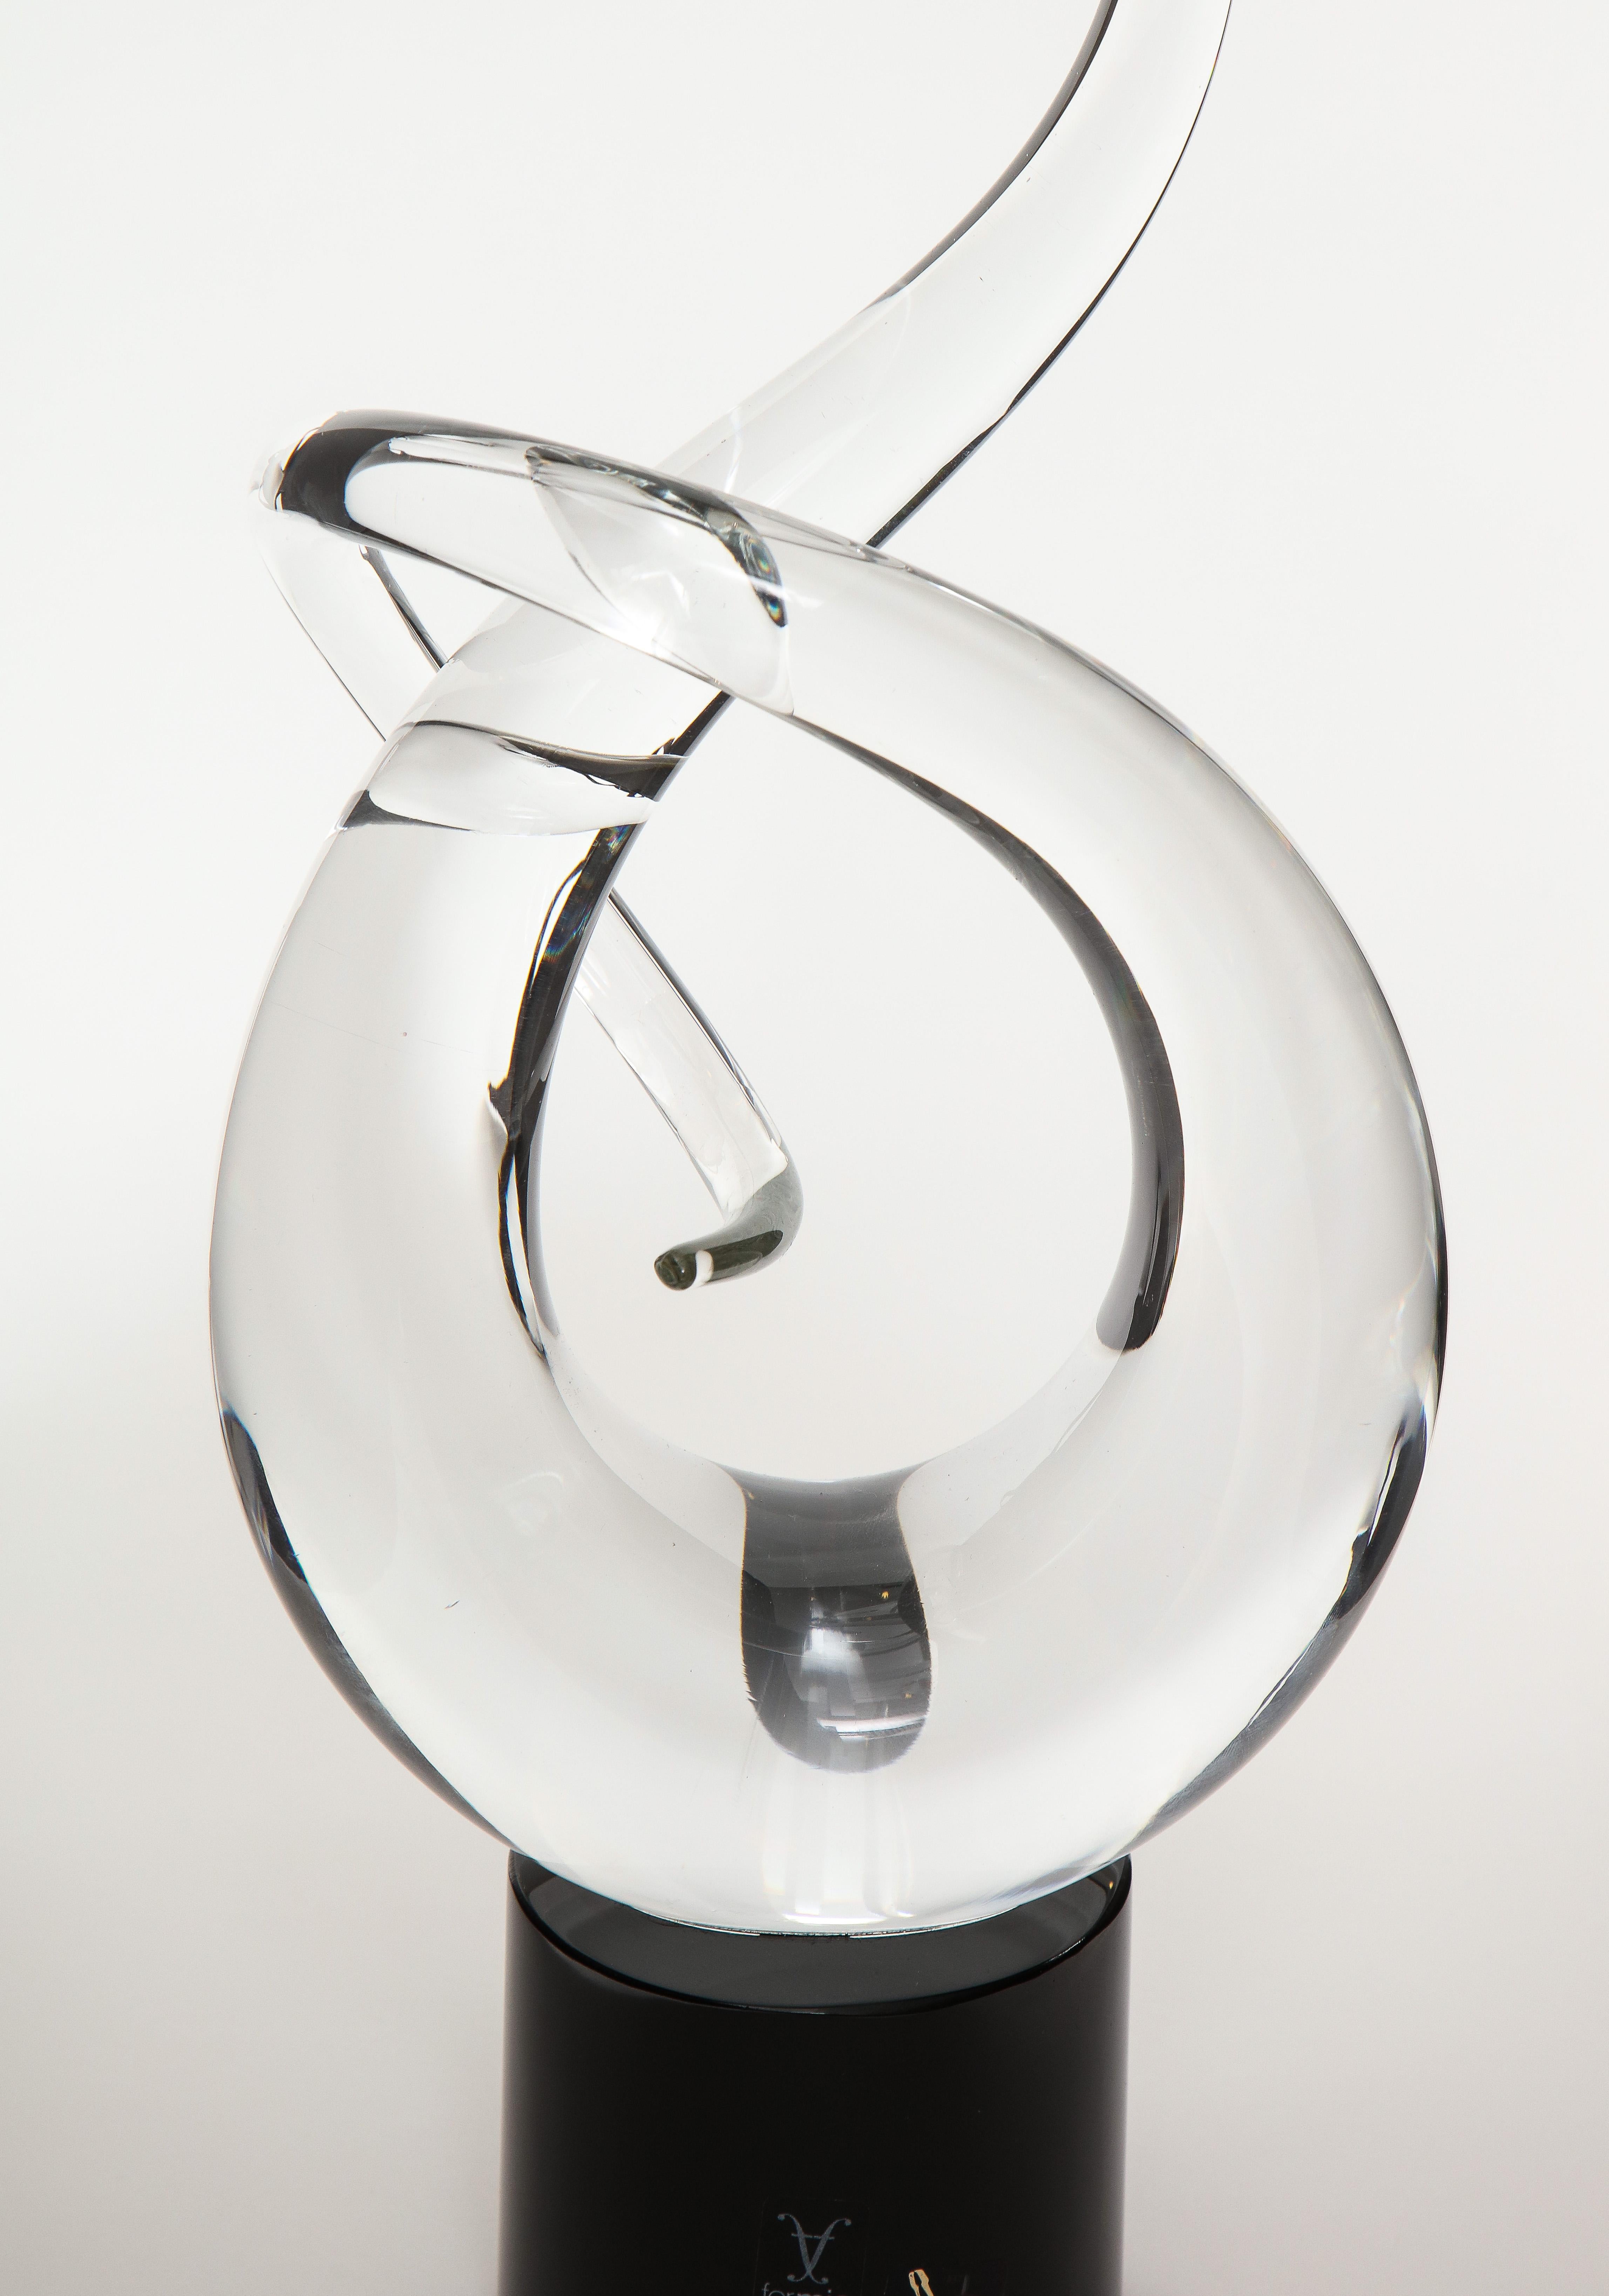 Abstrakte Murano-Glas-Skulptur 